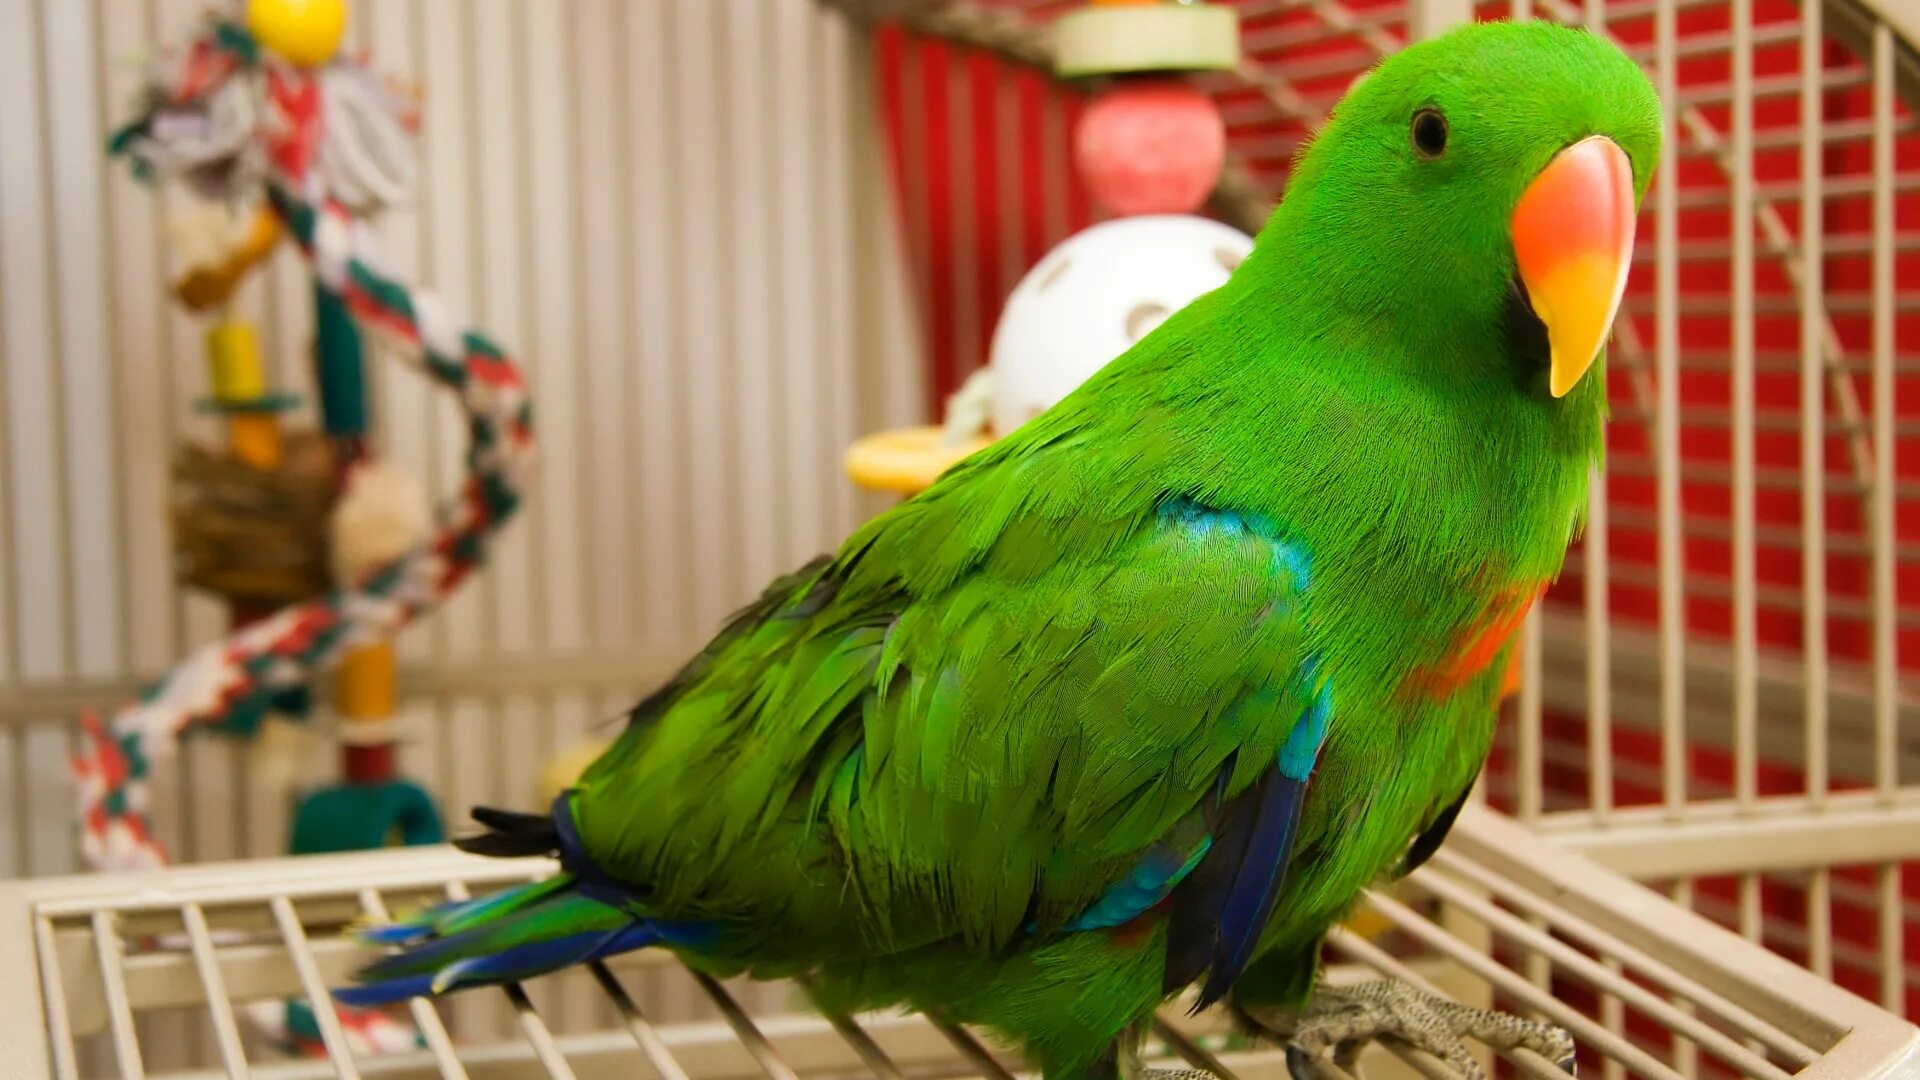 Home bird. Попугай зеленый волнистик. Лазурный какарики. Попугай домашний. Домашние питомцы попугайчики.